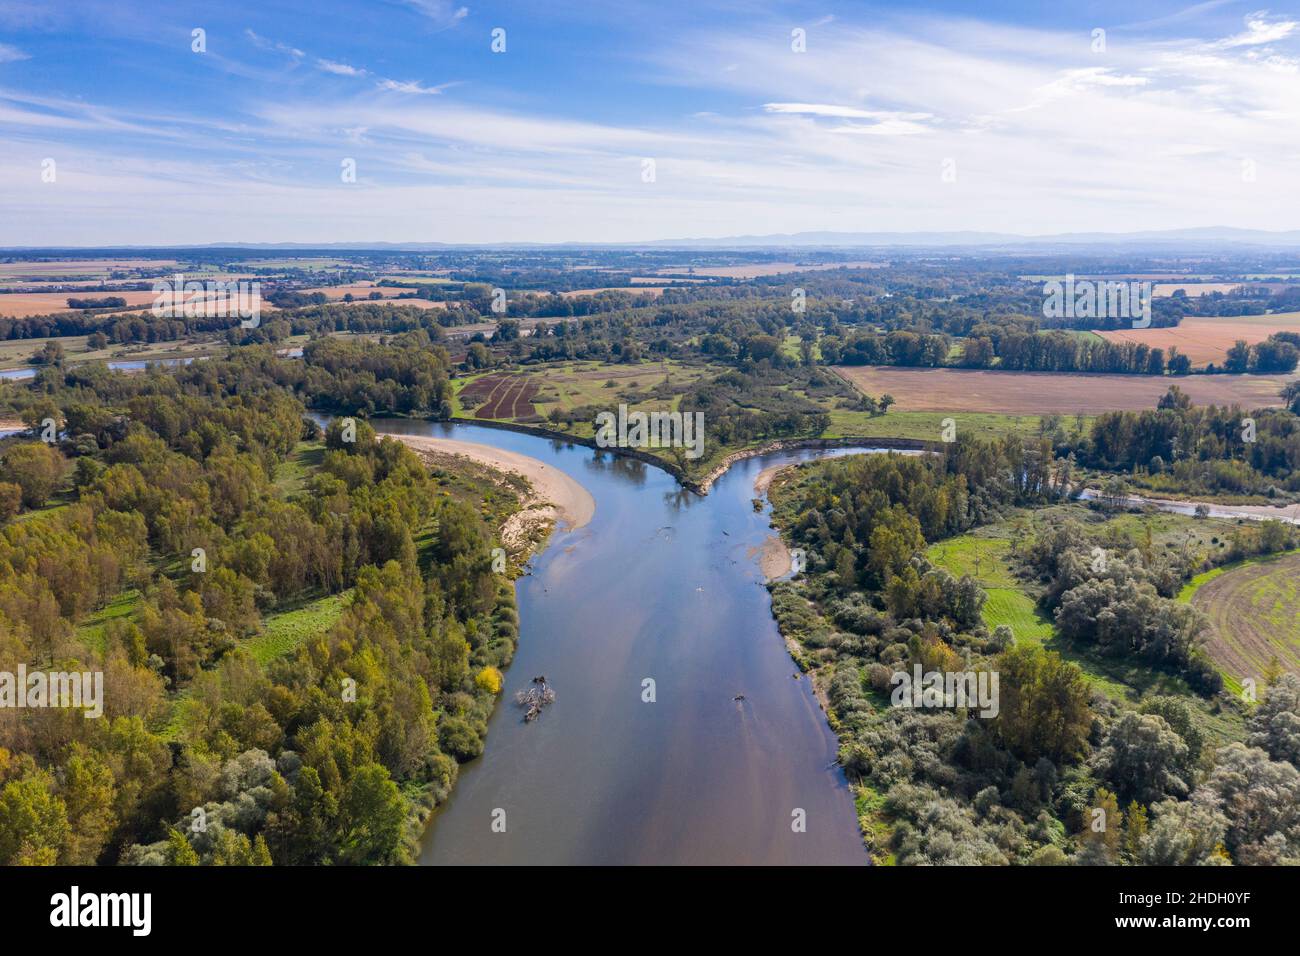 Frankreich, Allier, Bourbonnais, La Ferte-Hauterive, Zusammenfluss des Flusses Sioule mit dem Fluss Allier, Naturschutzgebiet Natura 2000 Basse Sioule (A Stockfoto